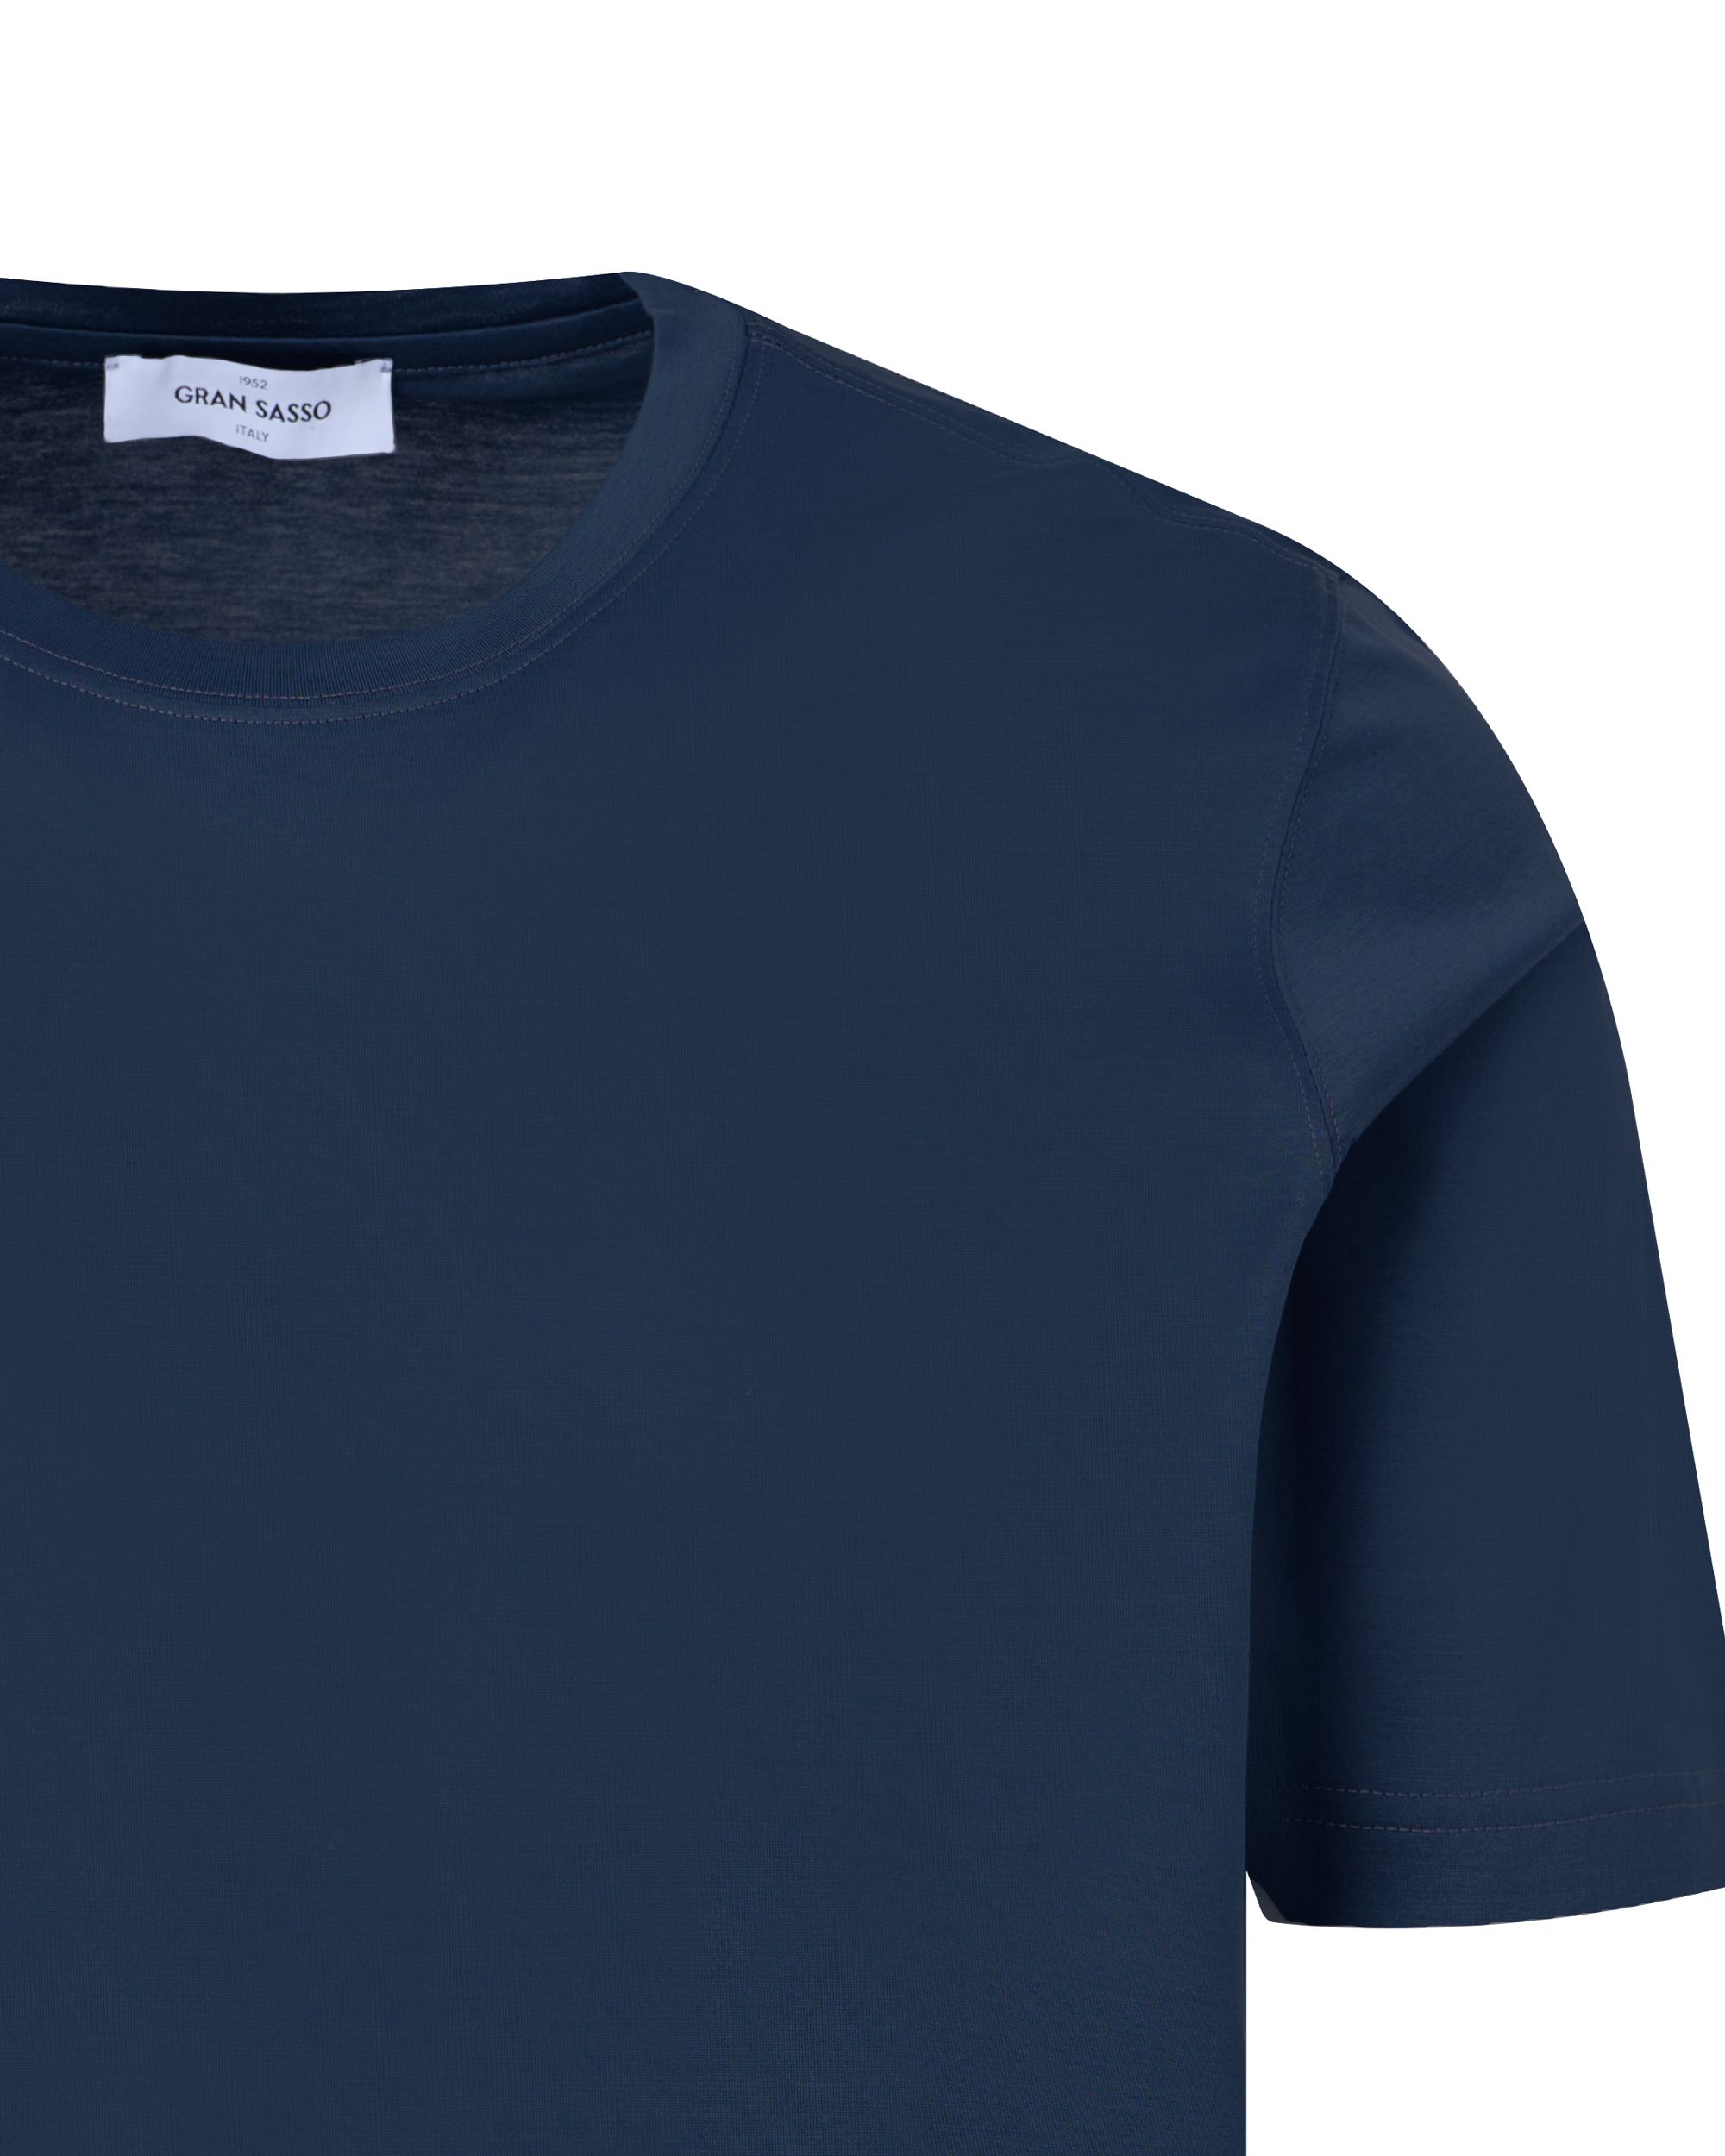 Gran Sasso T-shirt KM Donker blauw 091805-001-48